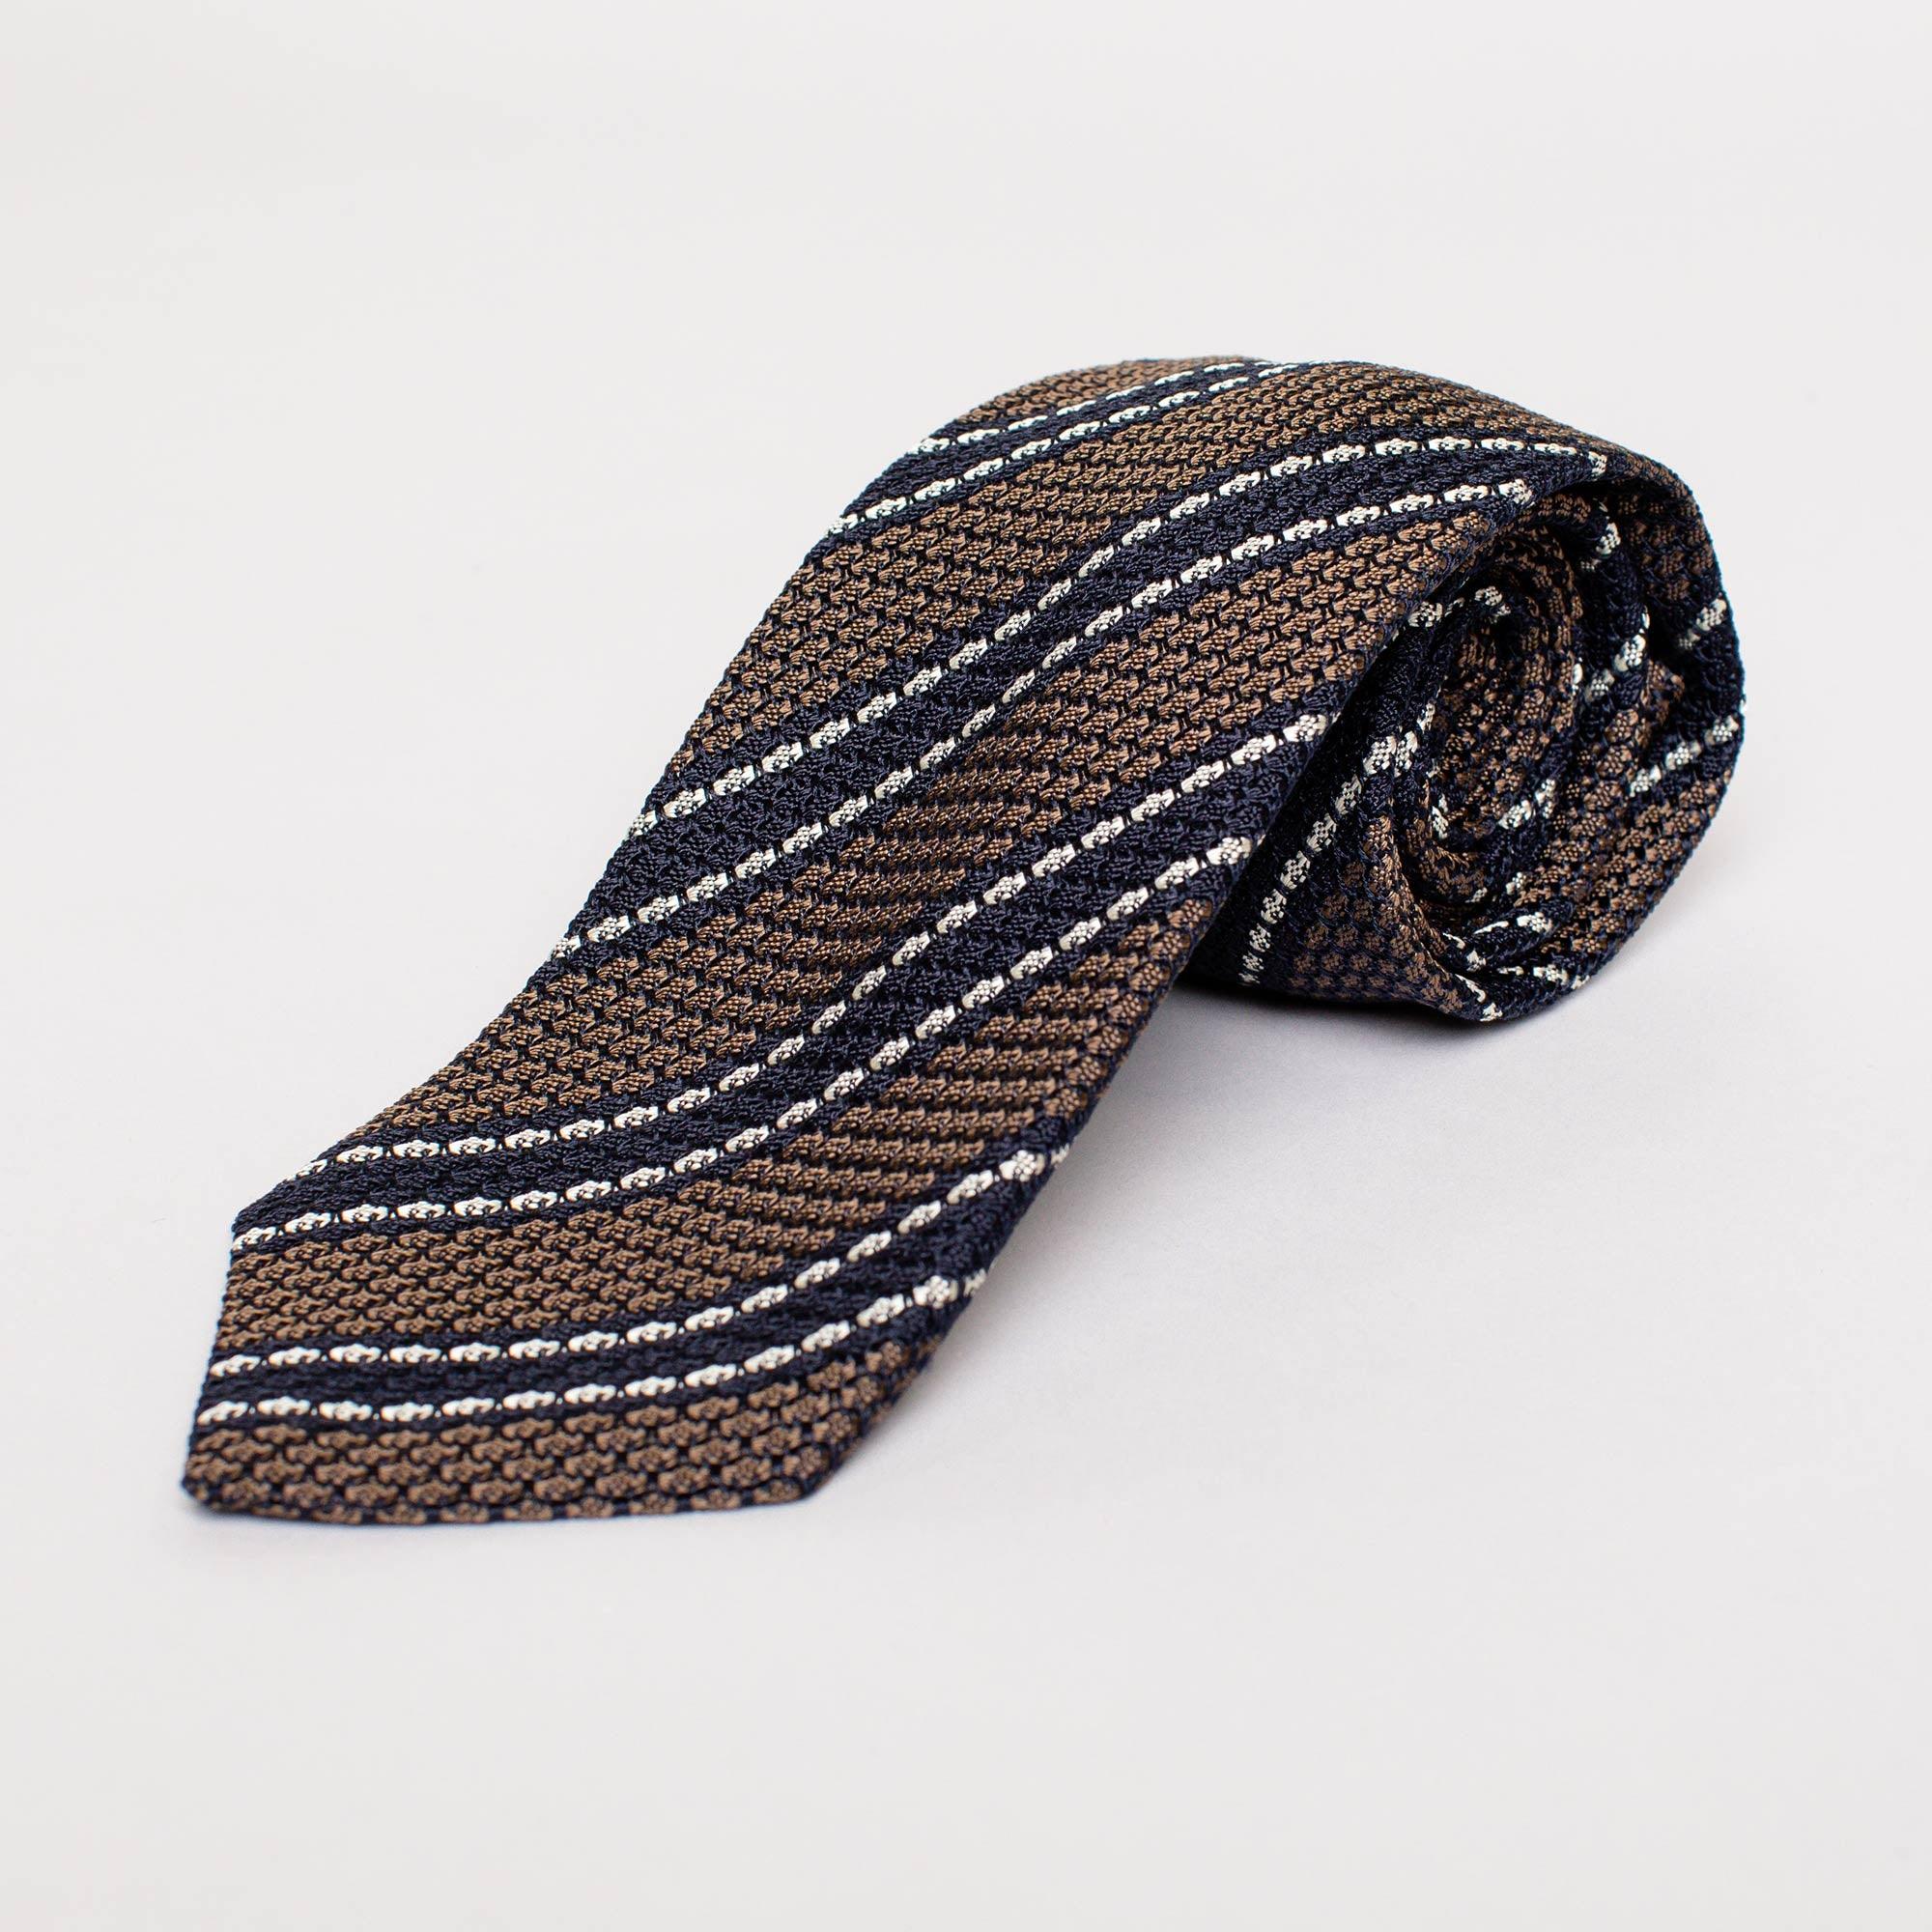 Krawatte Strick Braun / Blau - JUCAN GmbH